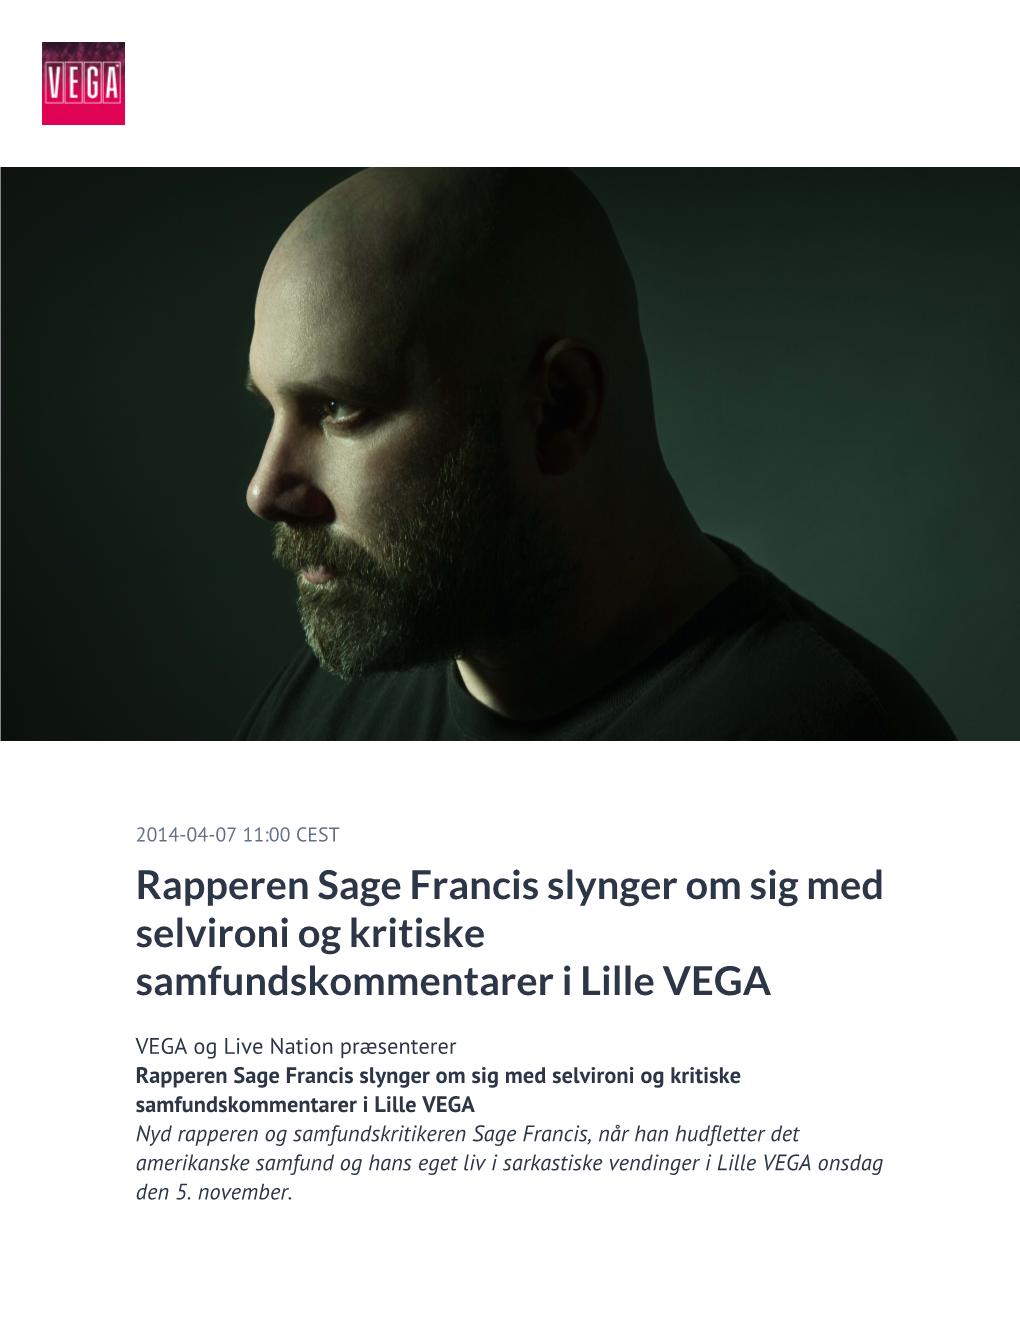 Rapperen Sage Francis Slynger Om Sig Med Selvironi Og Kritiske Samfundskommentarer I Lille VEGA